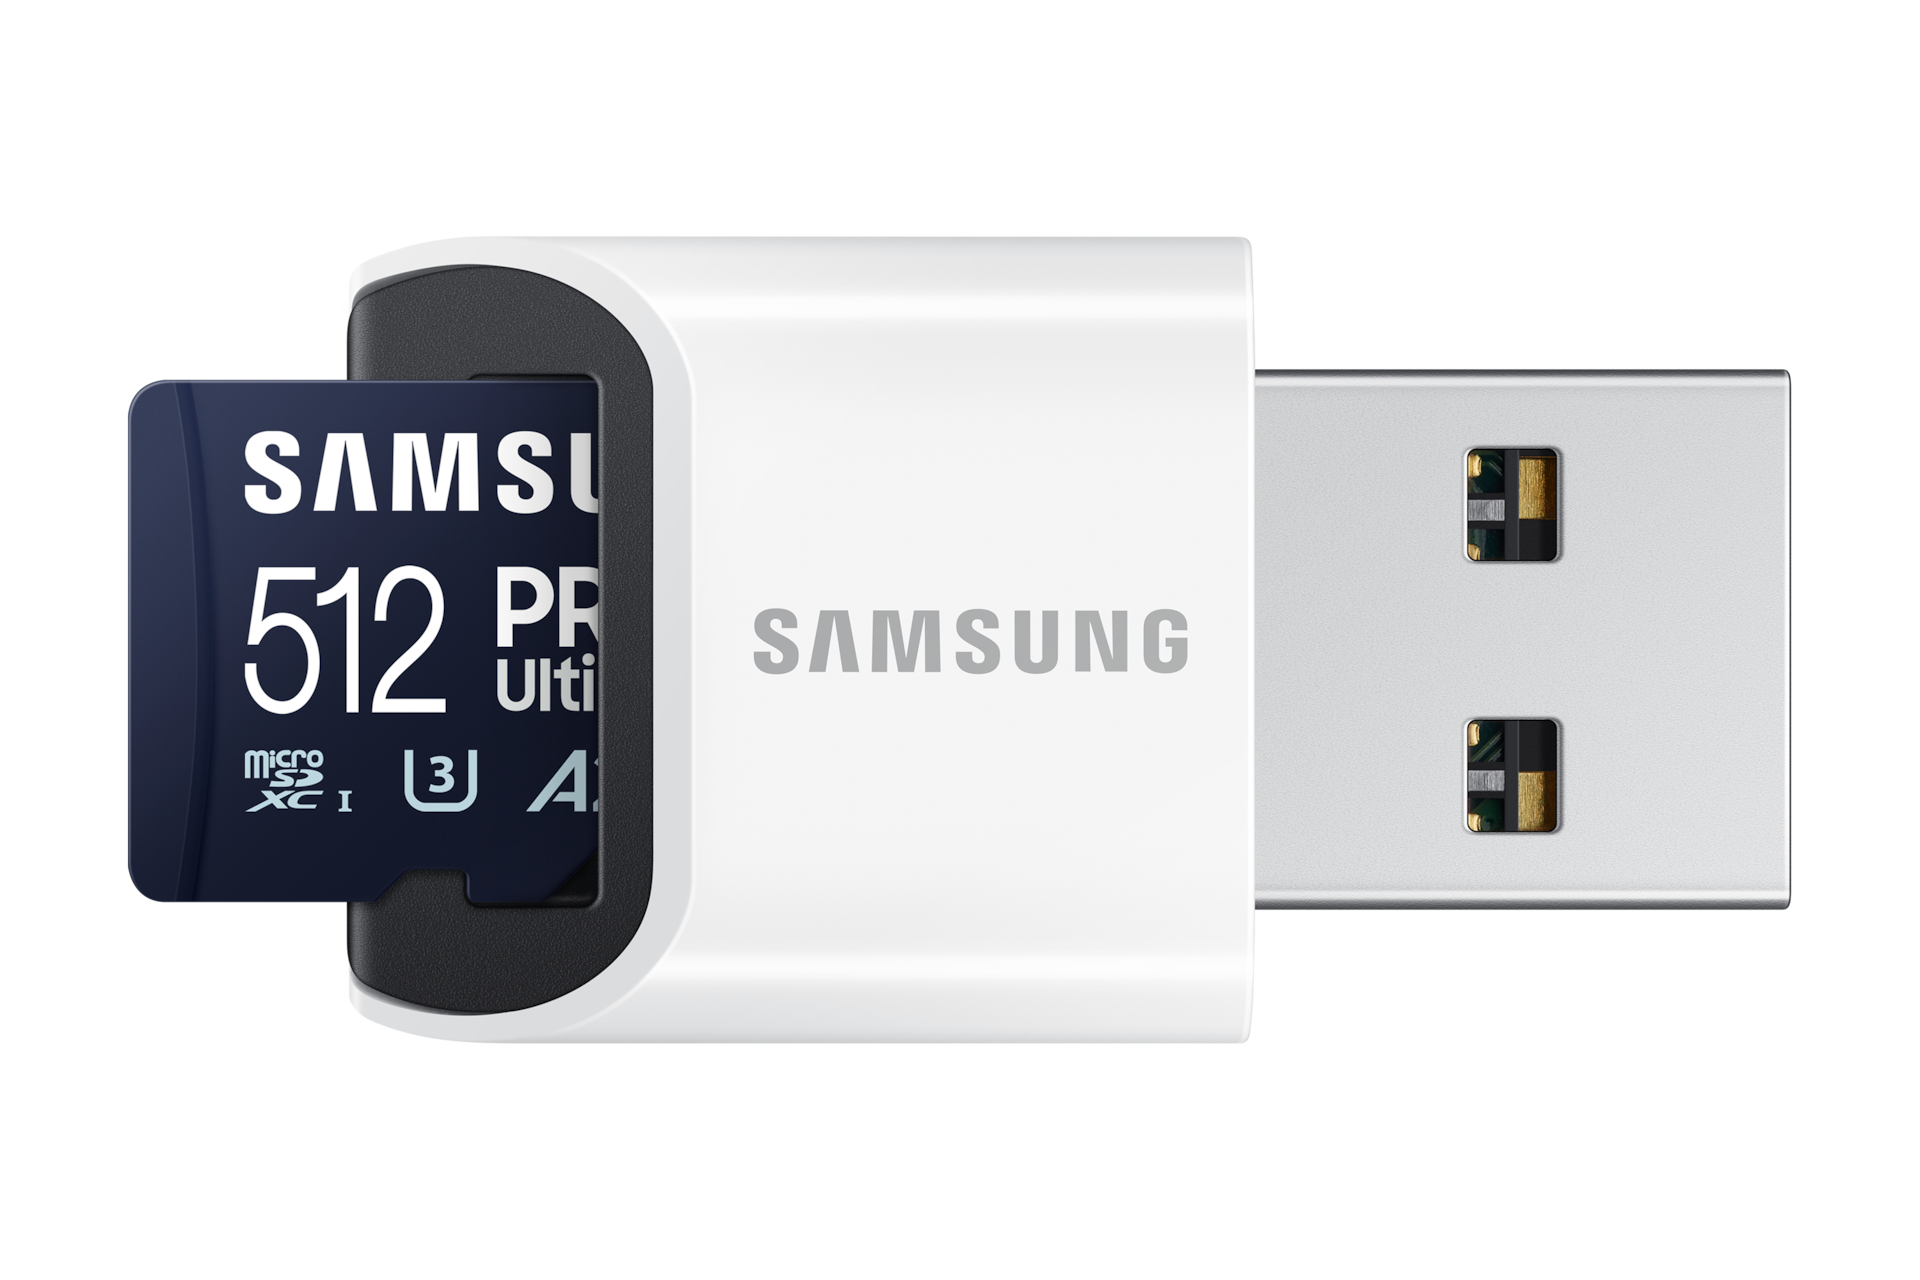 마이크로SD 메모리카드 PRO Ultimate with Card Reader 512 GB 제품이 USB에 결합된 이미지